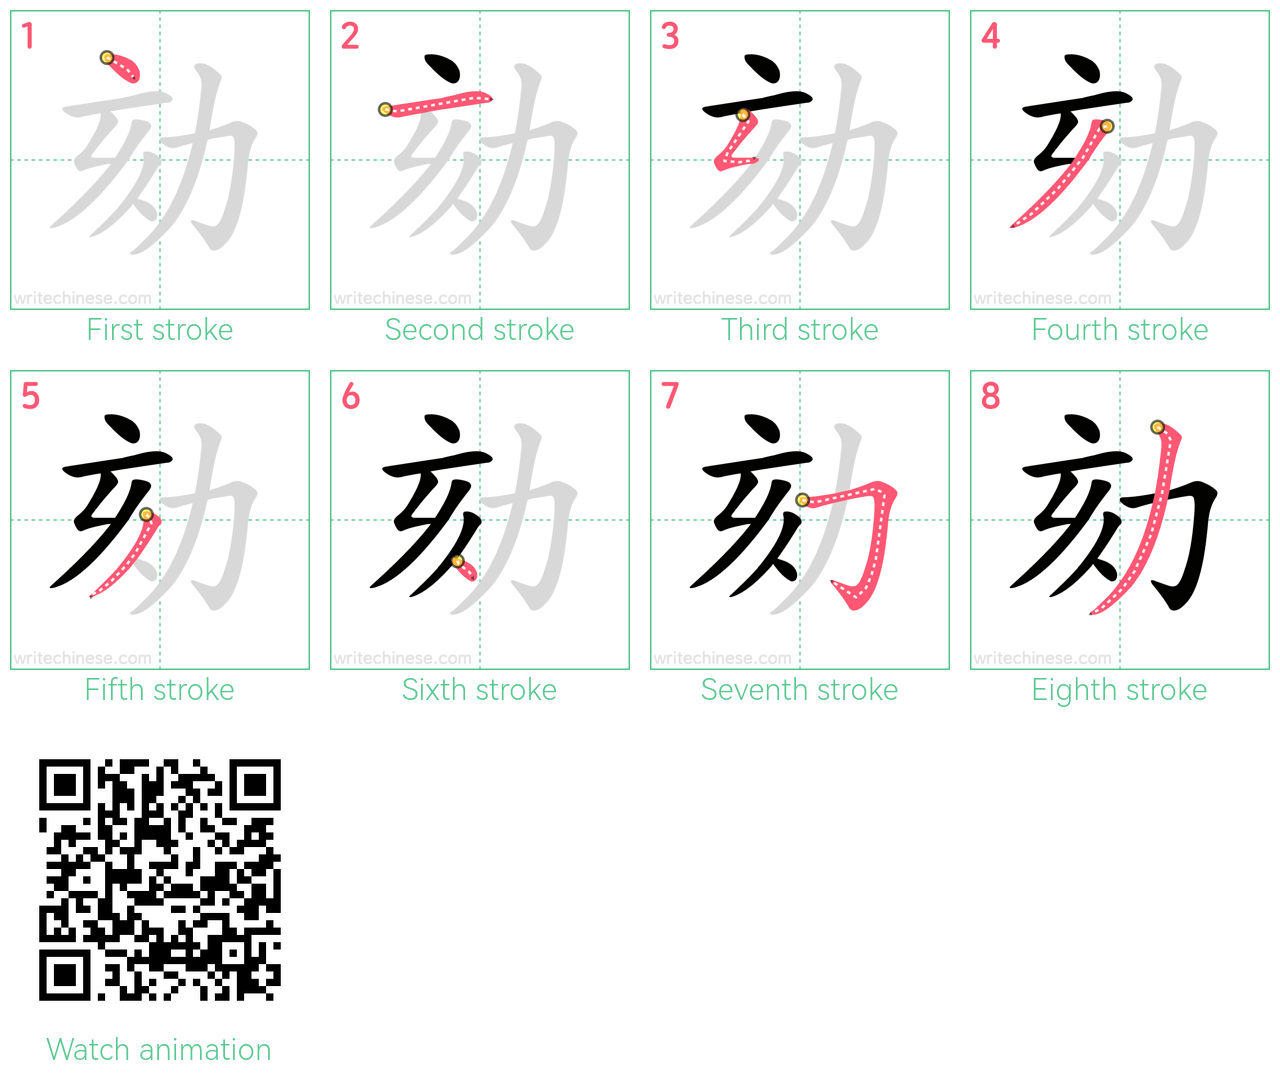 劾 step-by-step stroke order diagrams